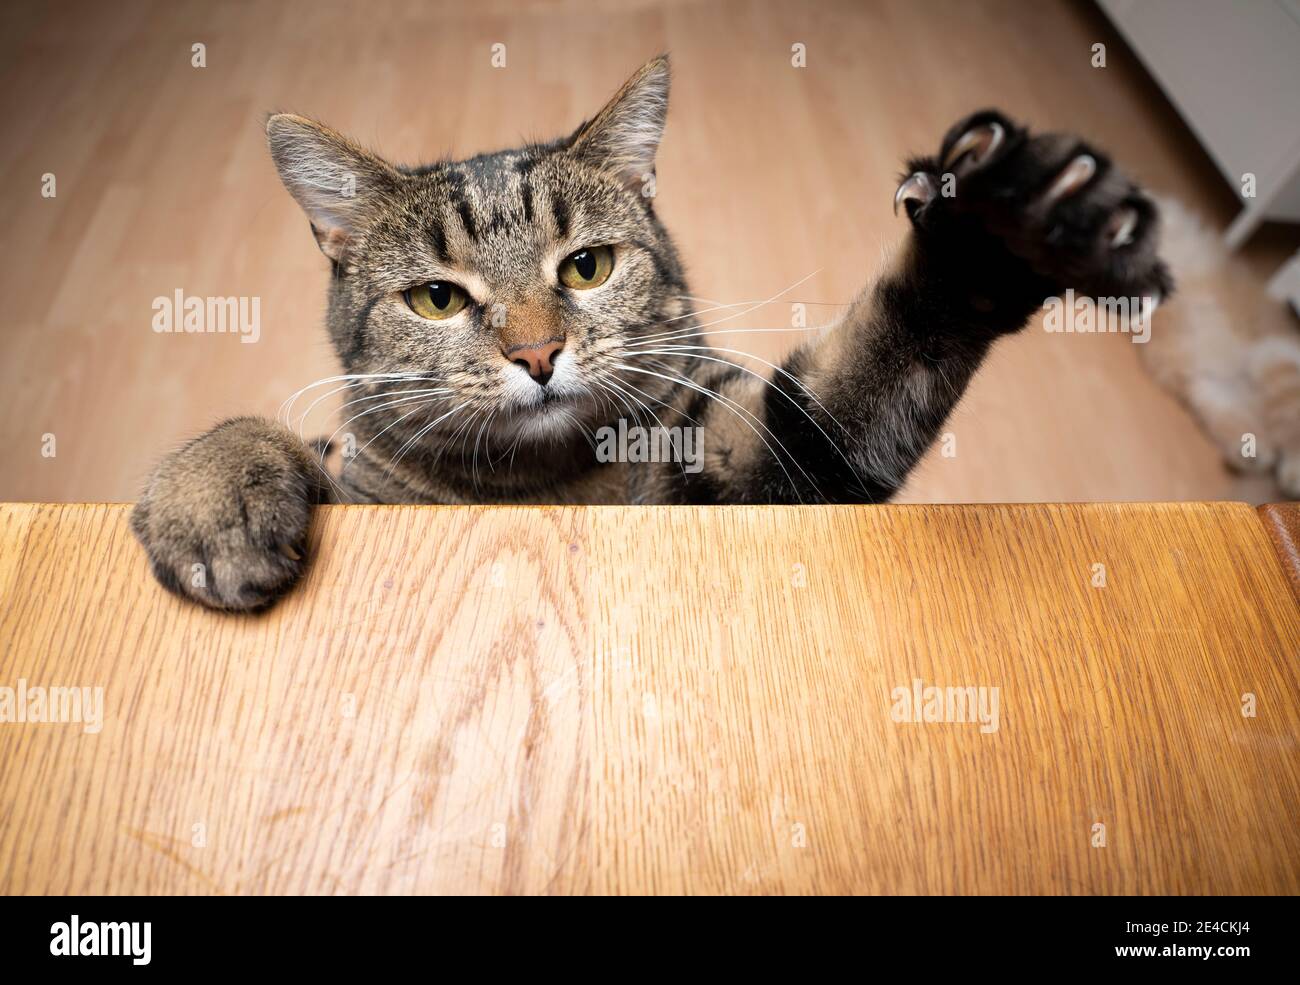 Gierige tabby Katze Aufzucht auf Holztisch mit Kopie Platz ragende Pfote Reching für Nahrung Stockfoto